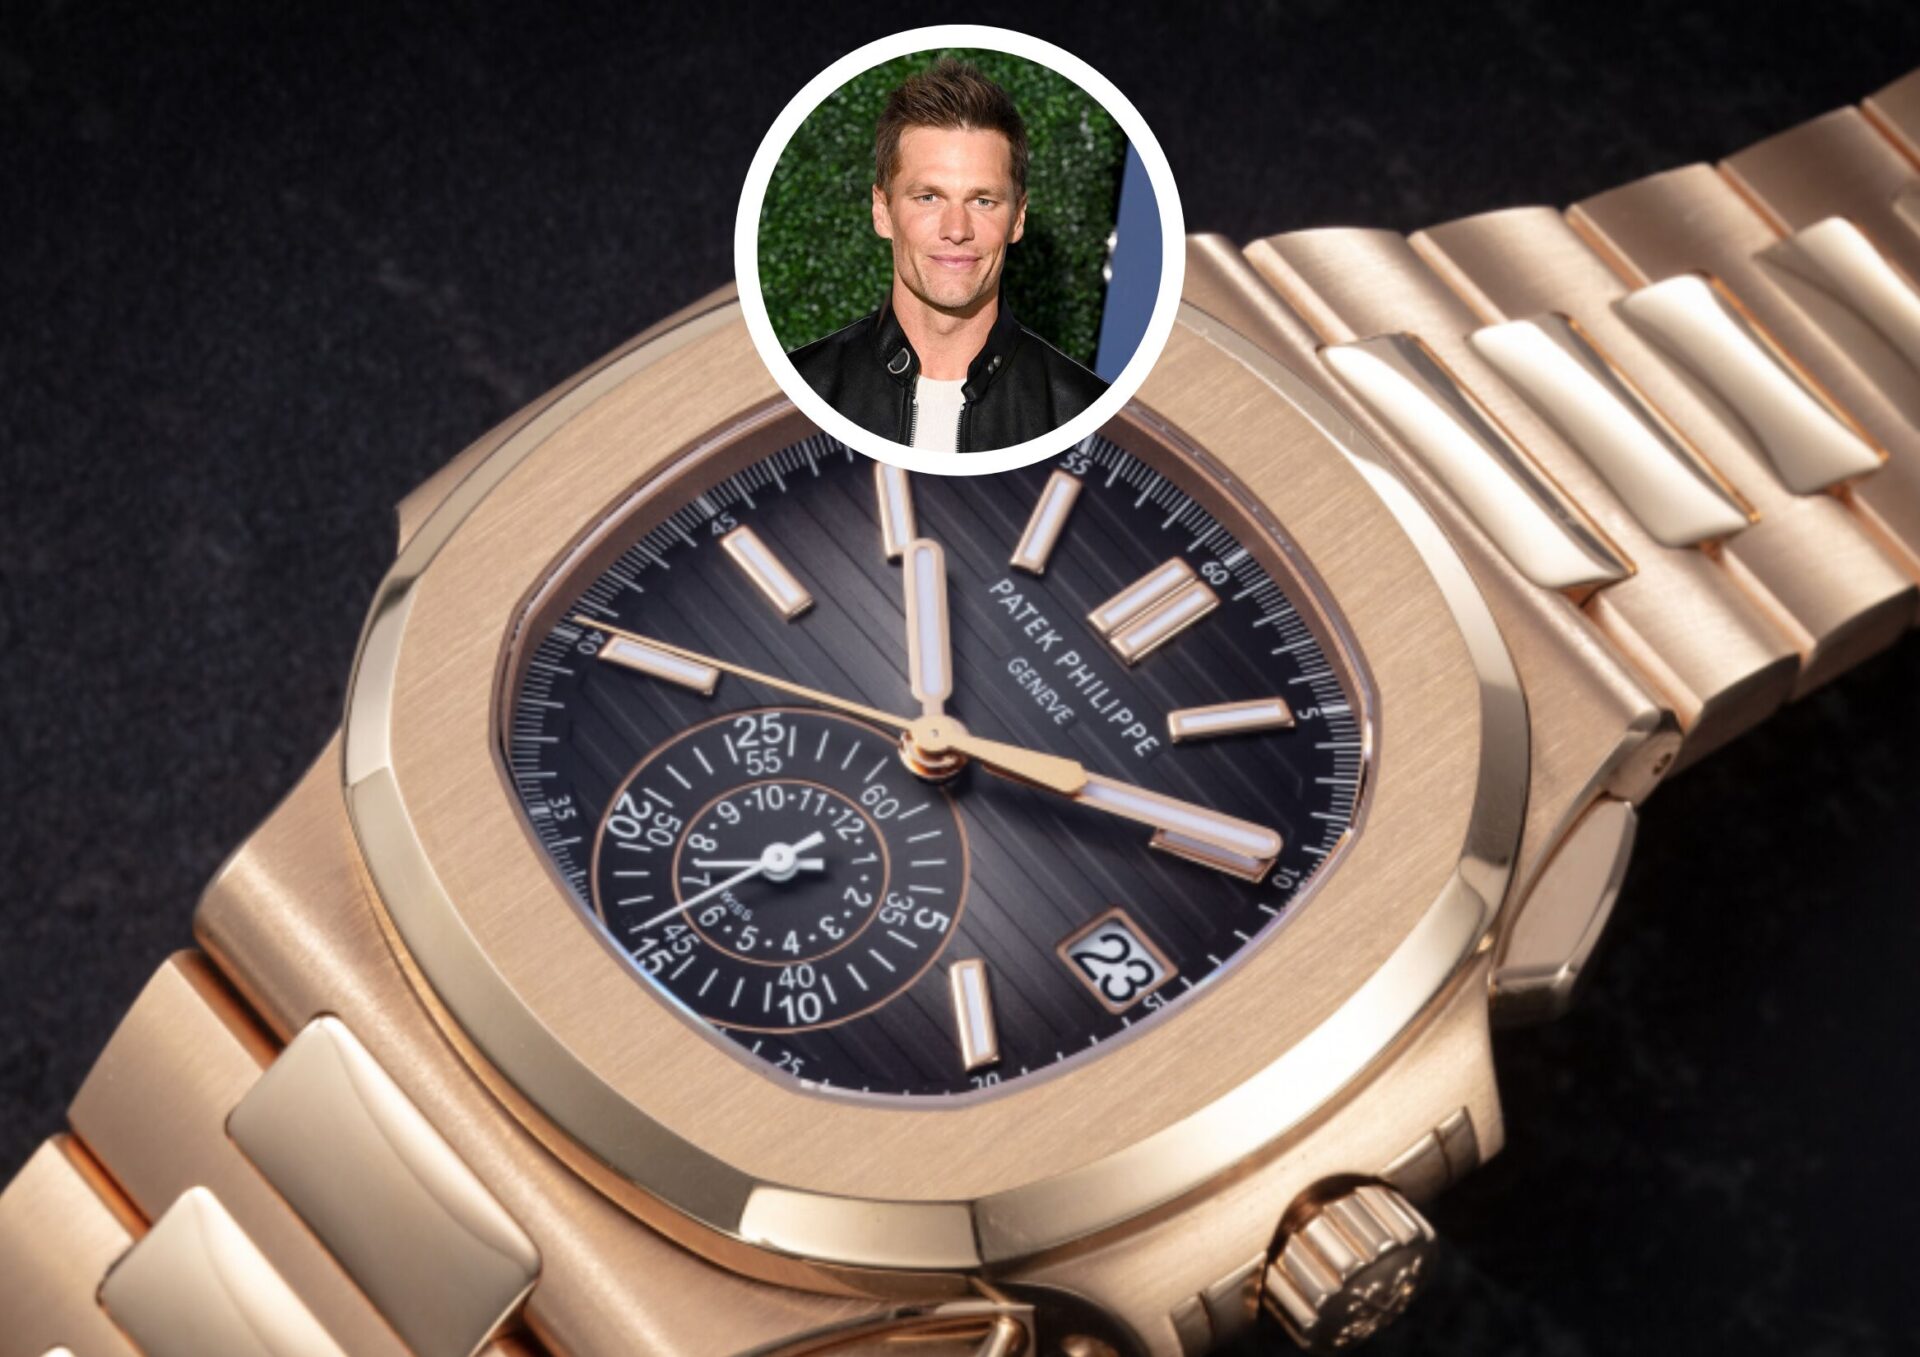 Main Image of Tom Brady's Watch